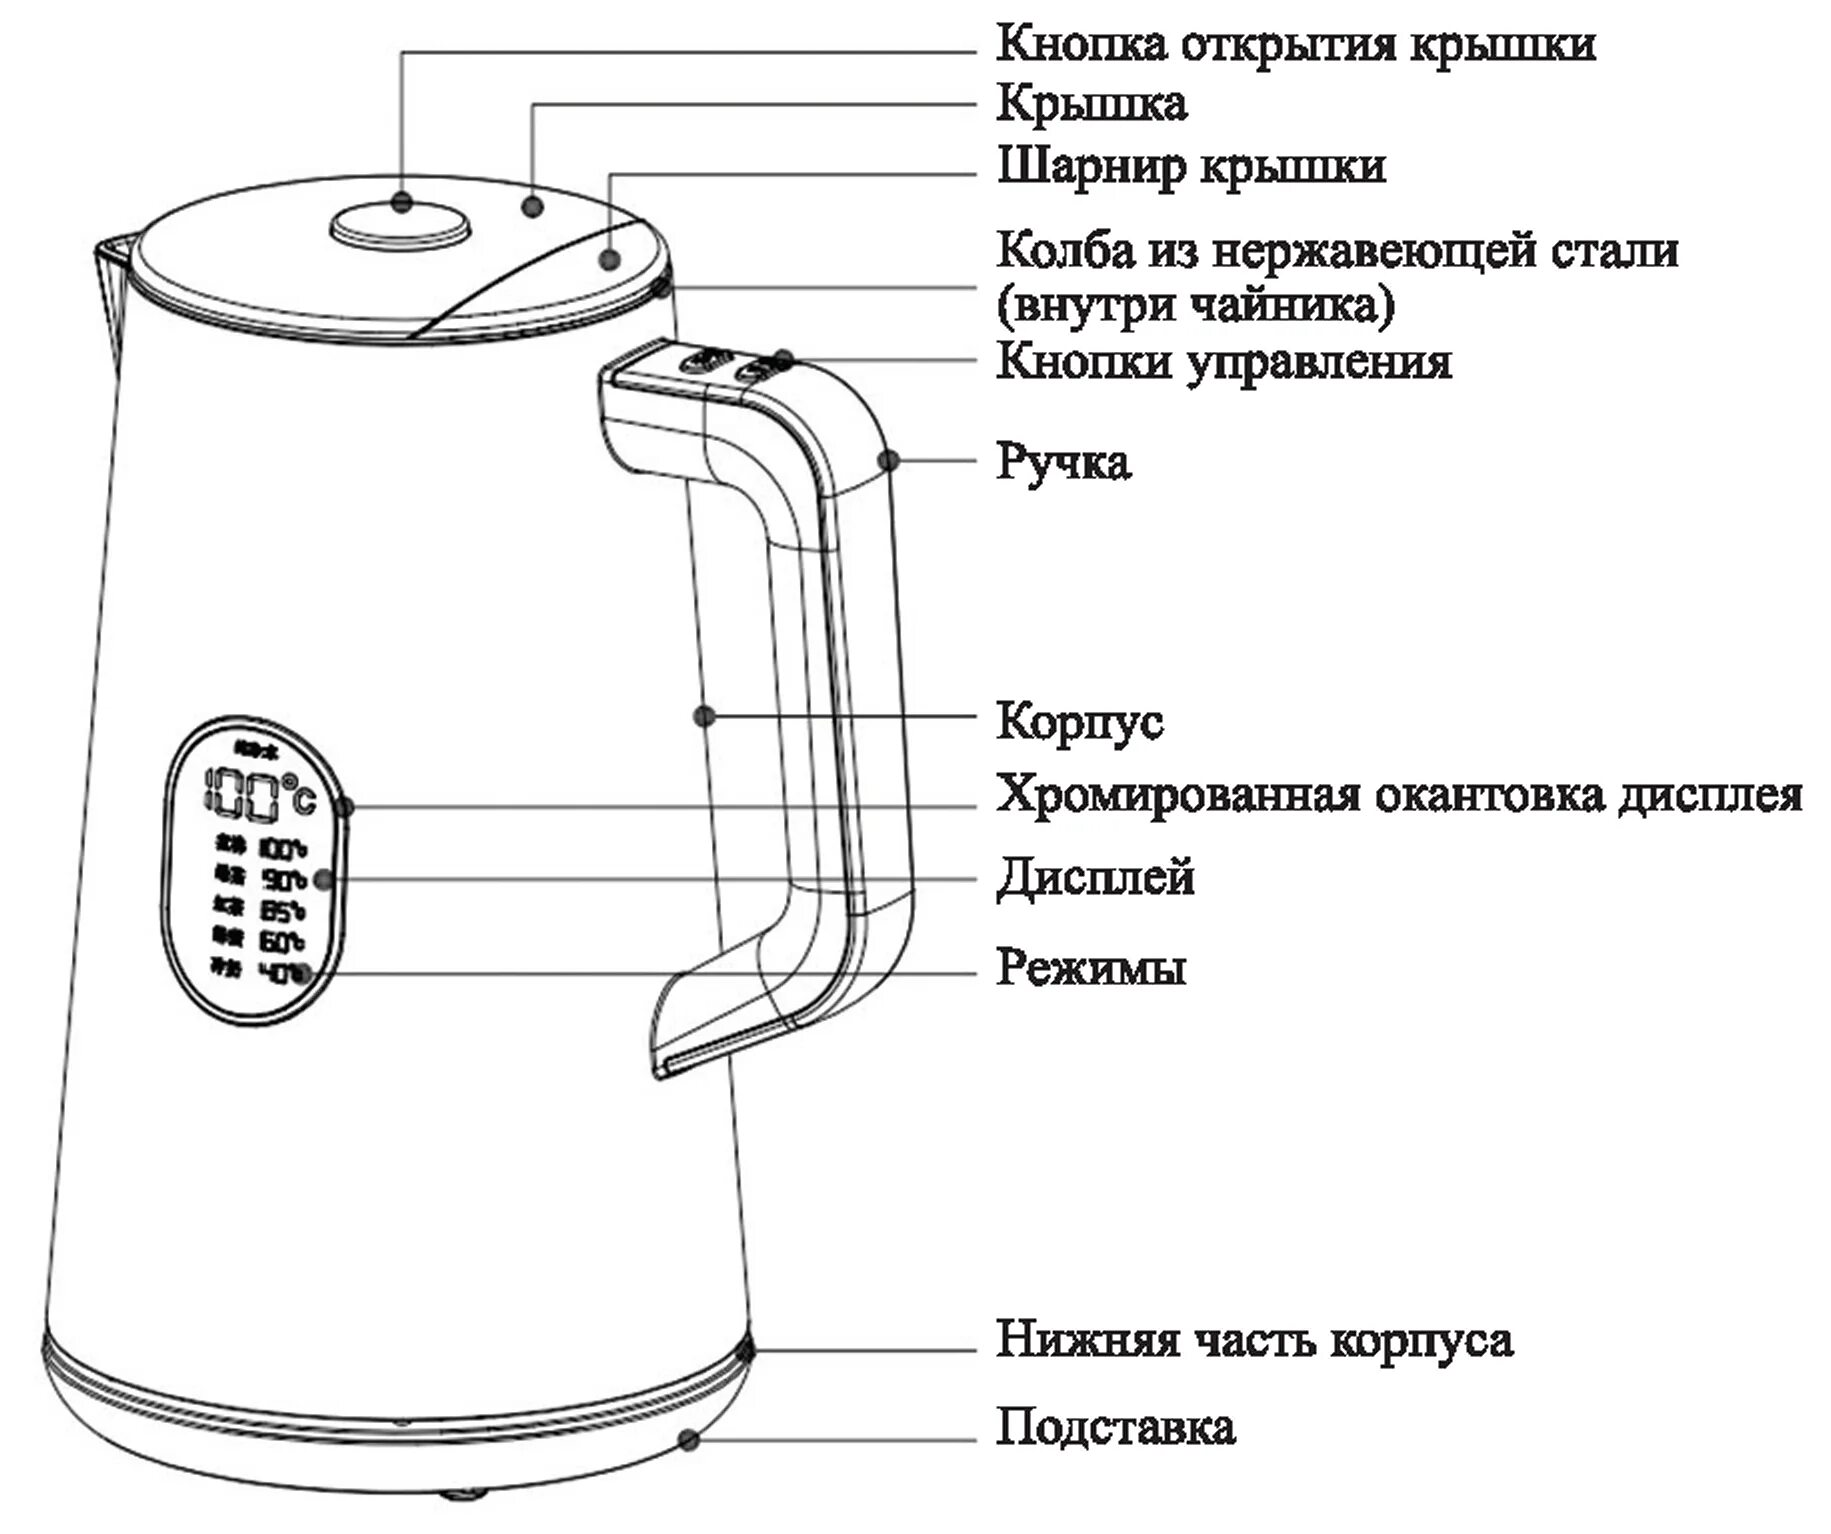 Электрическая схема чайника. Чайник Китфорт 6115. Чайник электрический Kitfort KT-6115. Чайник Kitfort KT-628 схема. Чайник Kitfort кт-601 схема электрическая.